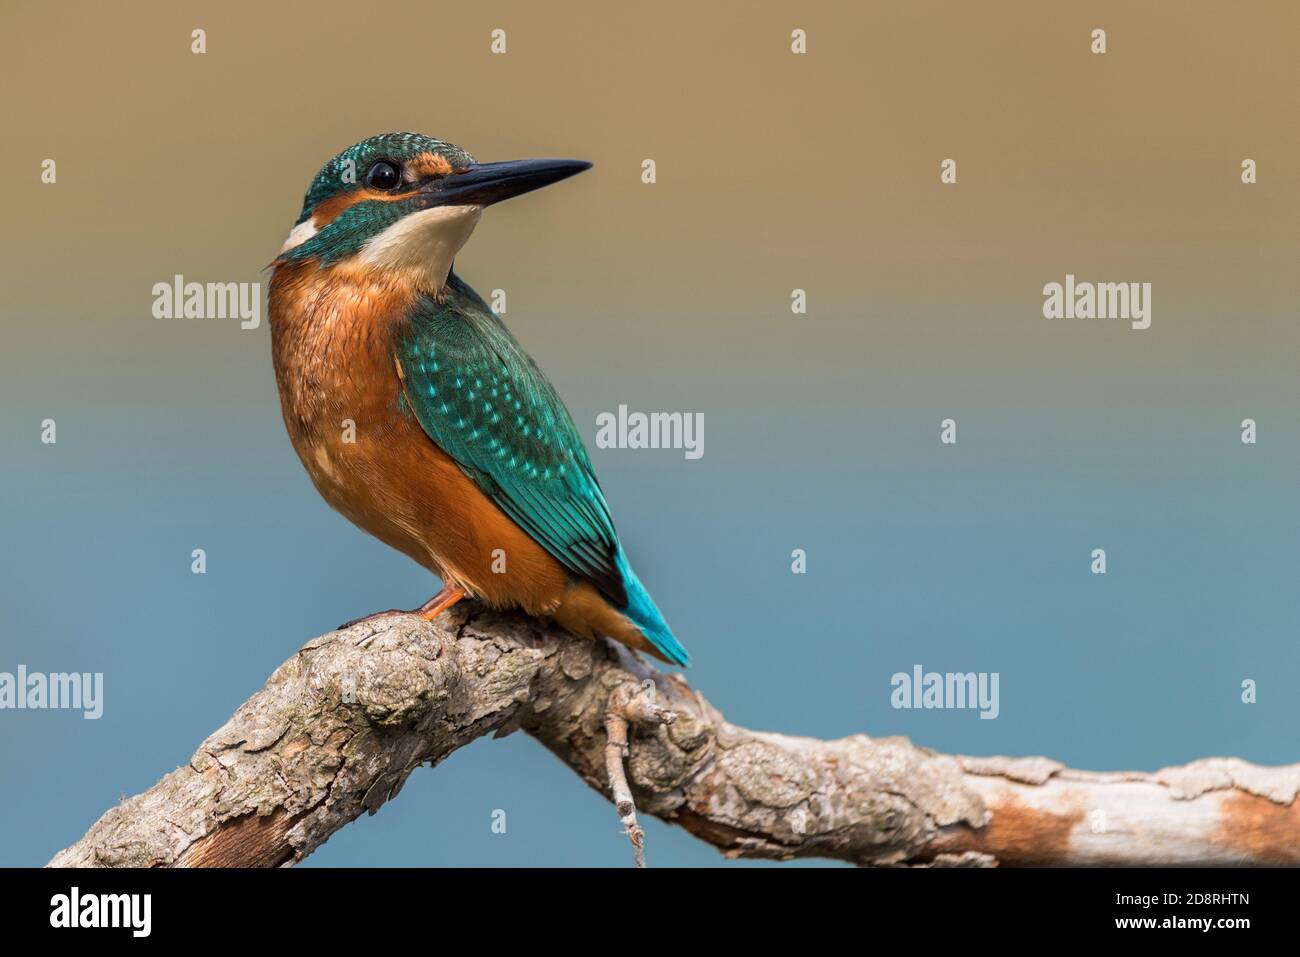 Mâle de kingfisher commun (Alcedo atthis) sur une branche Banque D'Images